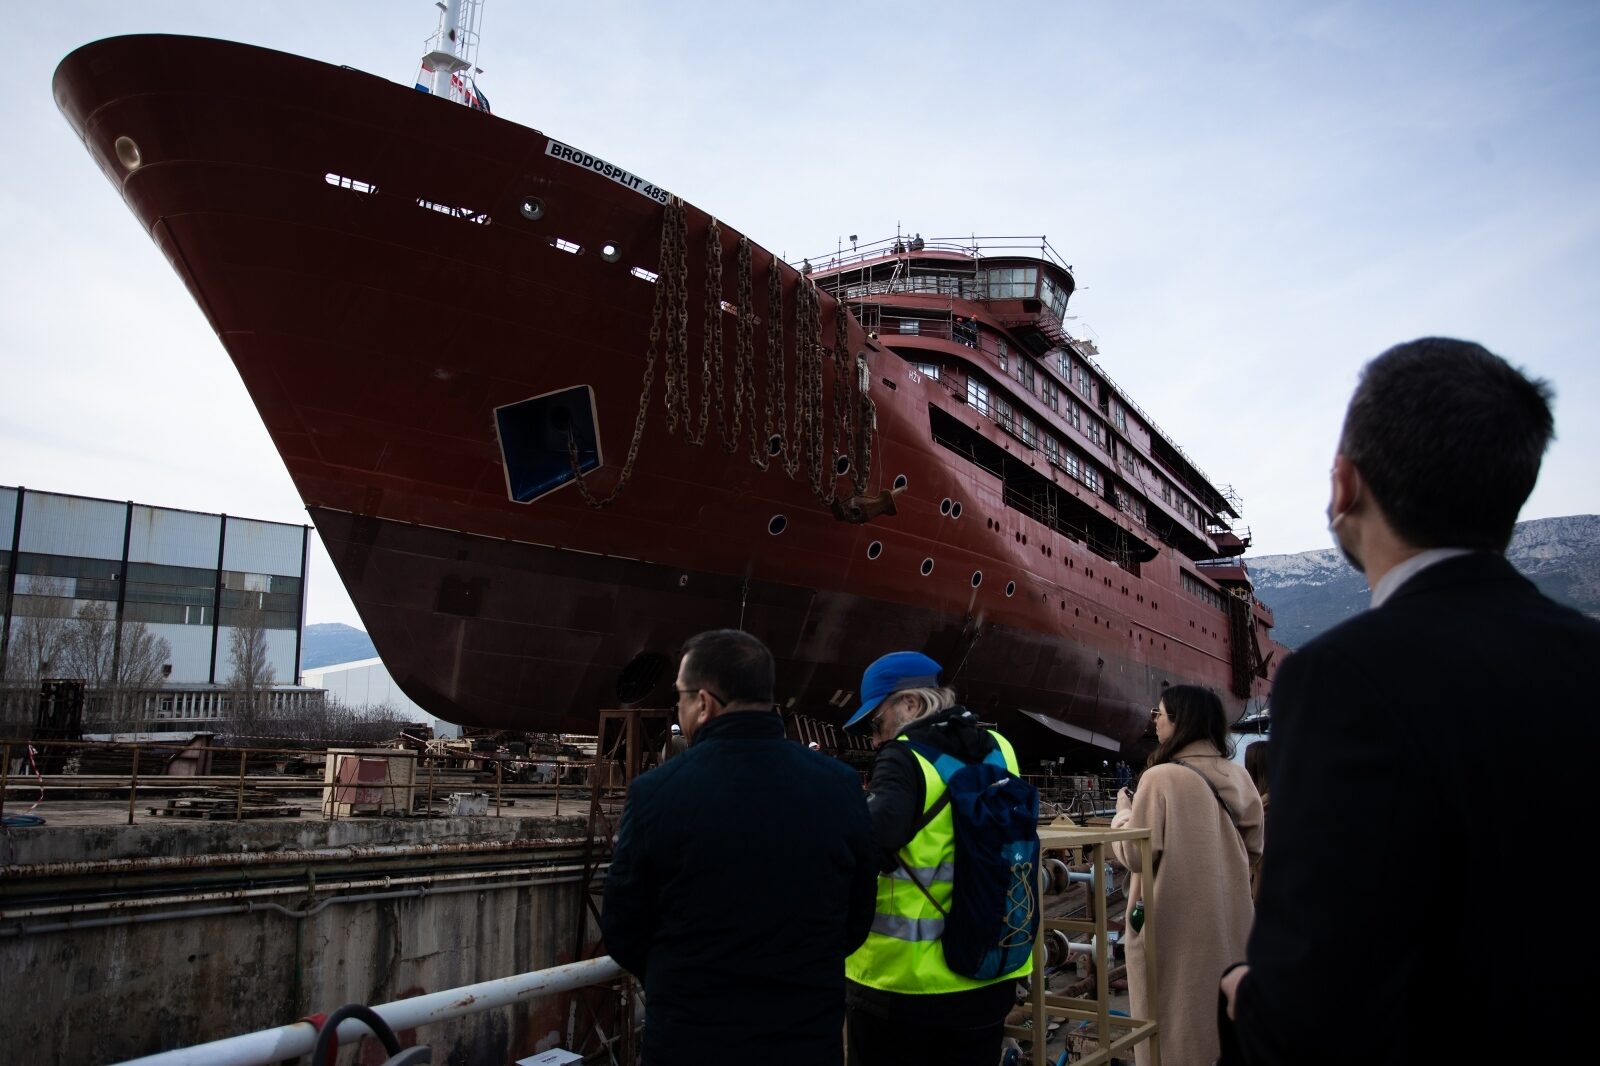 Split: Porinuće novogradnje 485, broda specijaliziranog za polarne ekspedicije